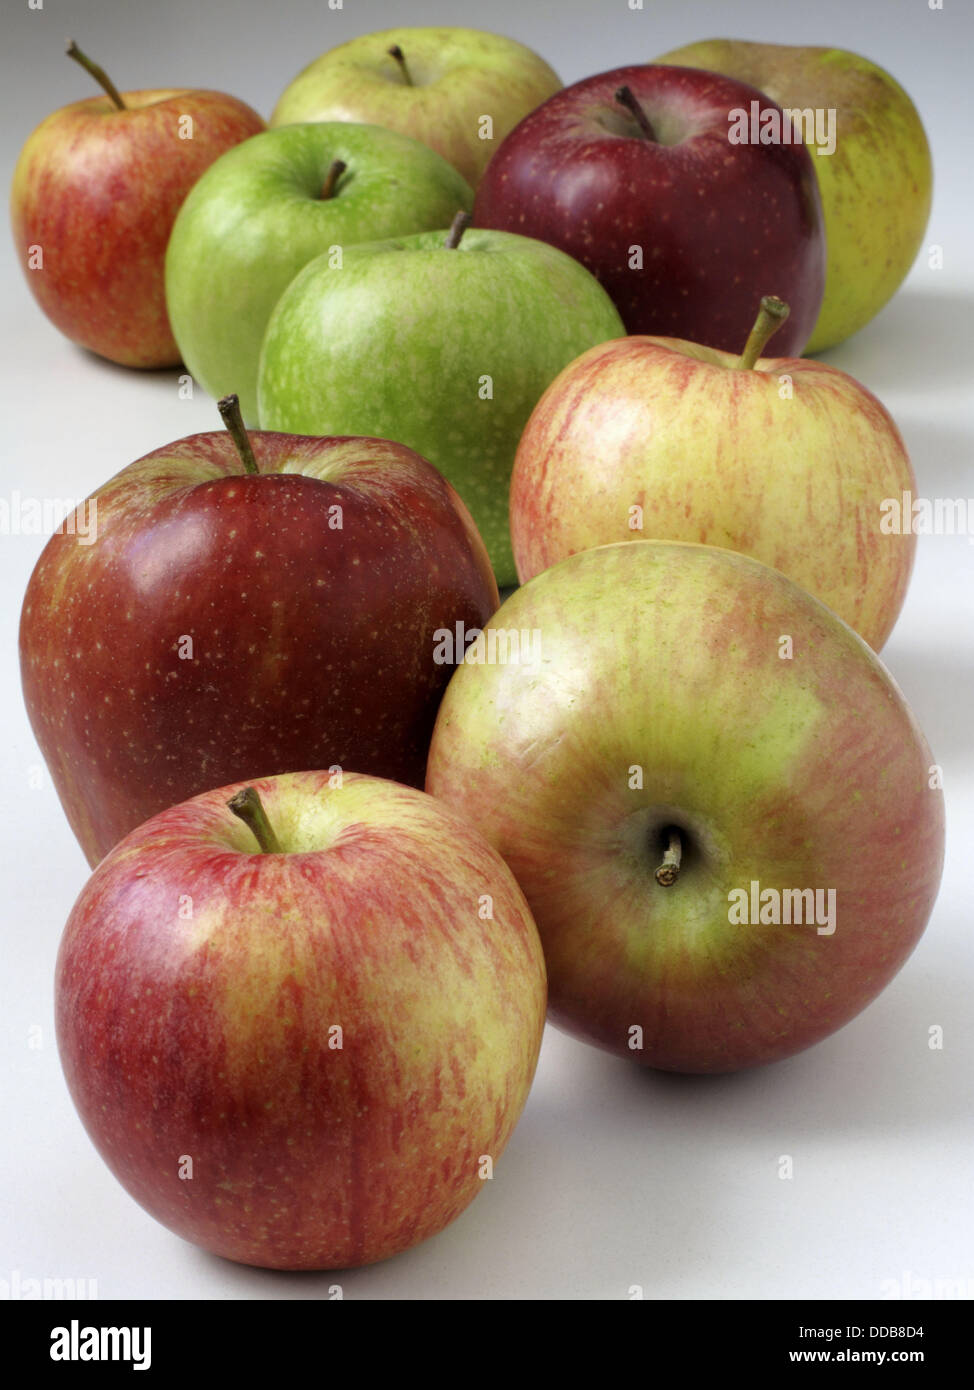 https://c8.alamy.com/comp/DDB8D4/apples-royal-gala-red-delicious-russet-golden-fuji-DDB8D4.jpg